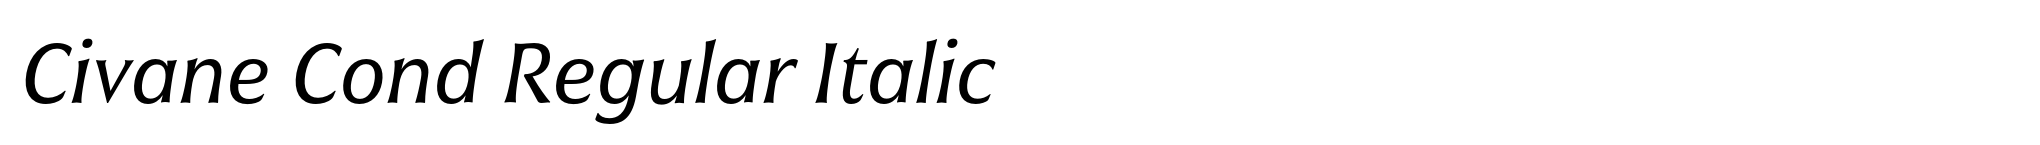 Civane Cond Regular Italic image